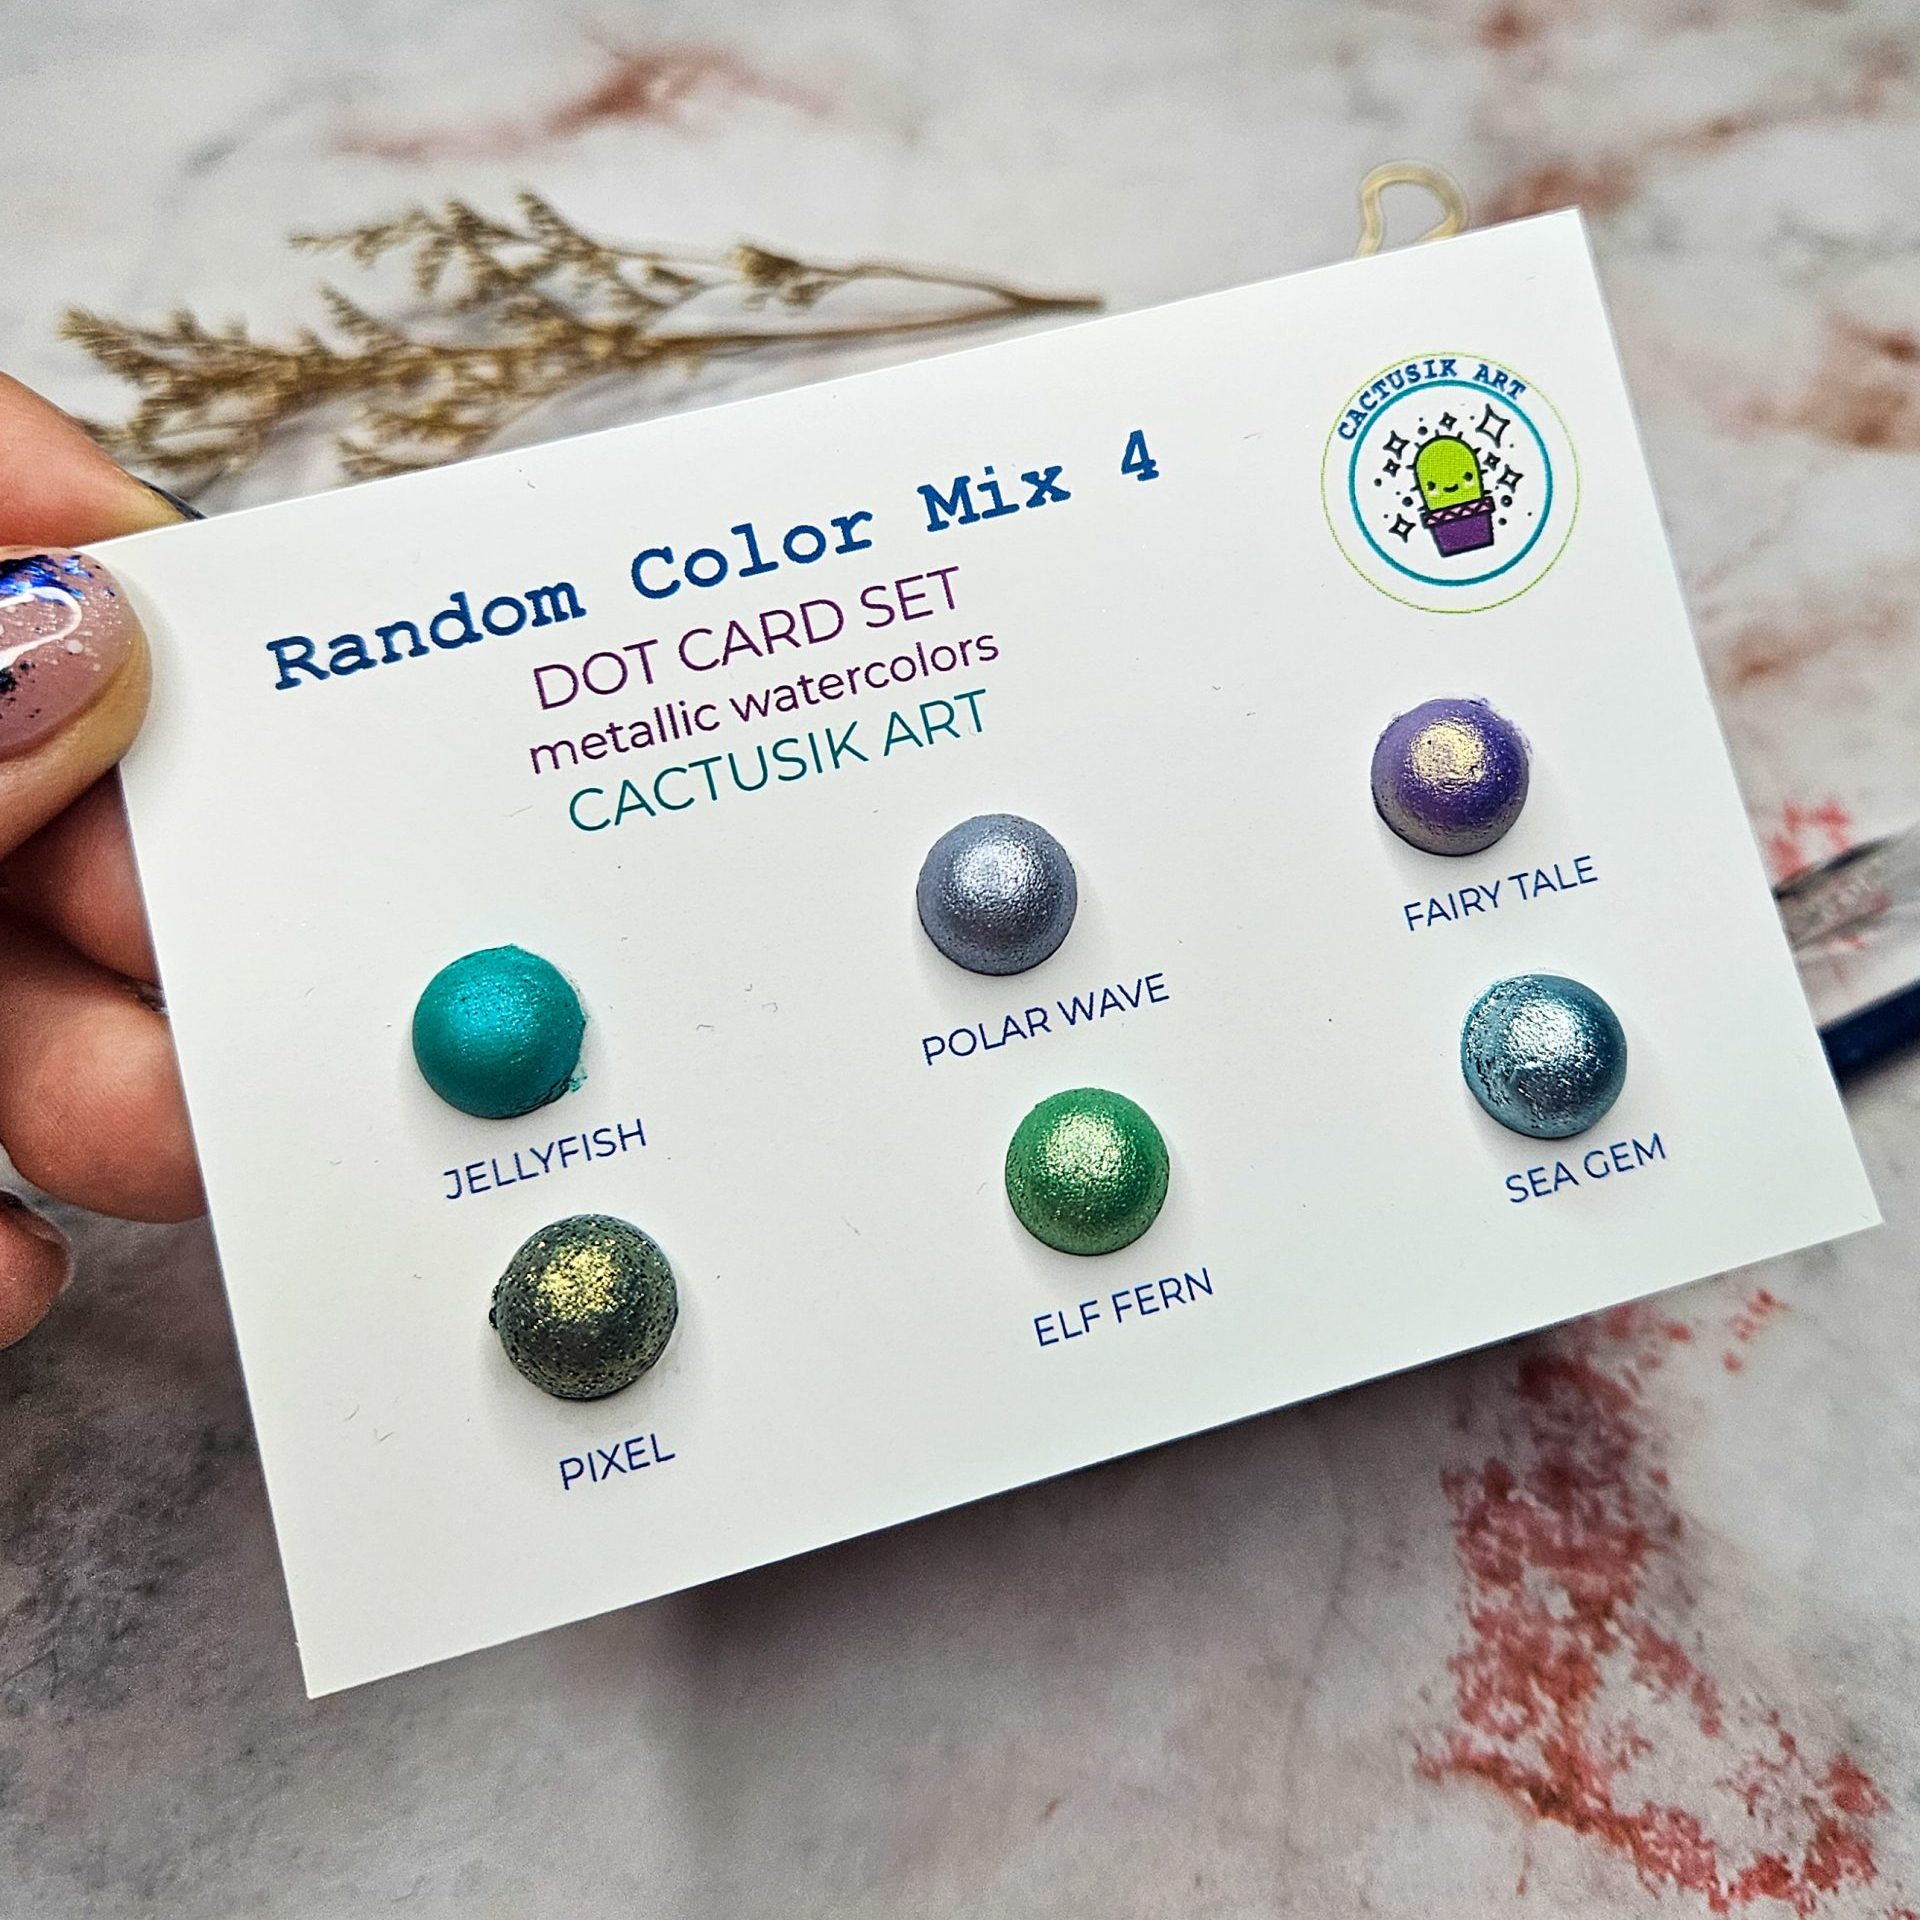 Random Color Mix 4 – Dot Card Set